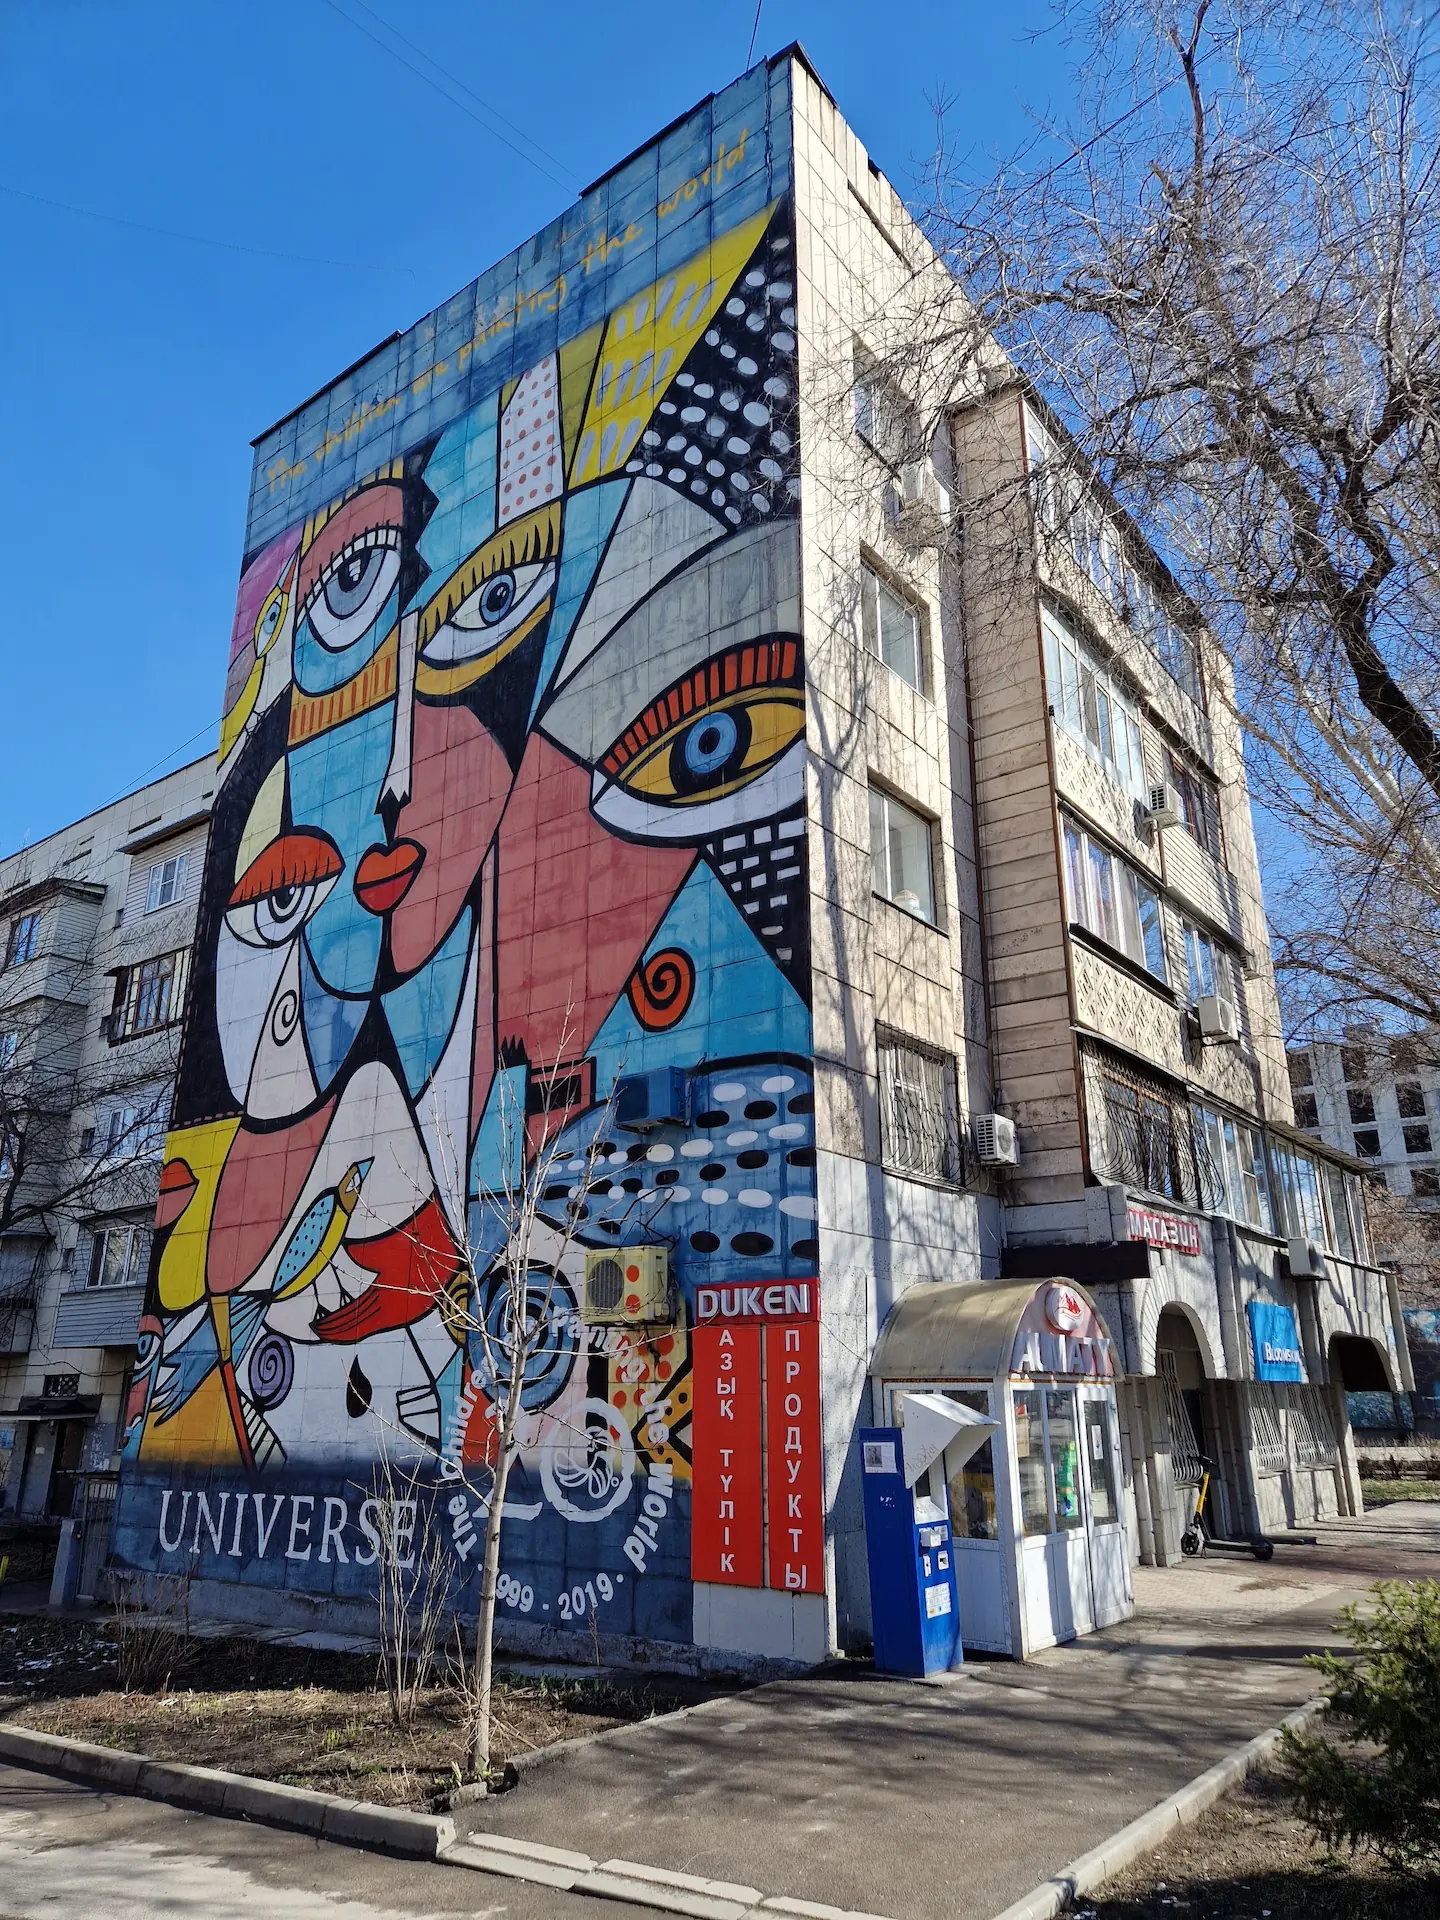 Cette photo et les suivantes montrent quelques façades couvertes de grandes fresques colorées de street art